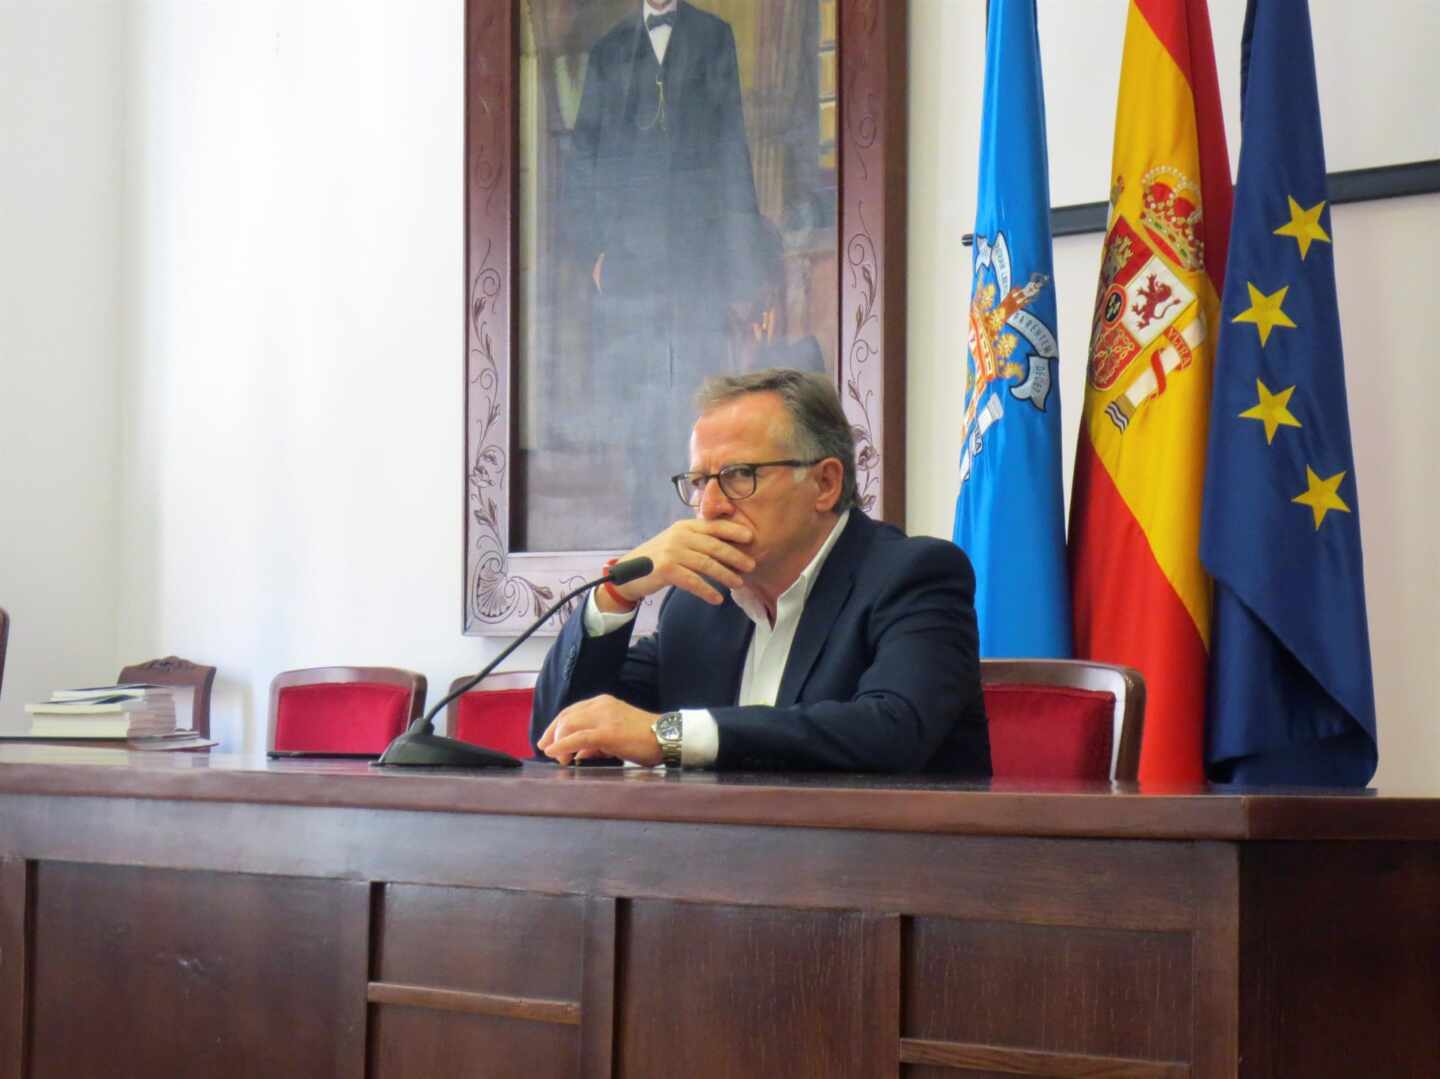 El presidente de Melilla, Eduardo de Castro, ha pedido al presidente del Gobierno, Pedro Sánchez, un posible despliegue del Ejército en la ciudad como una medida "preventiva y cautelar"